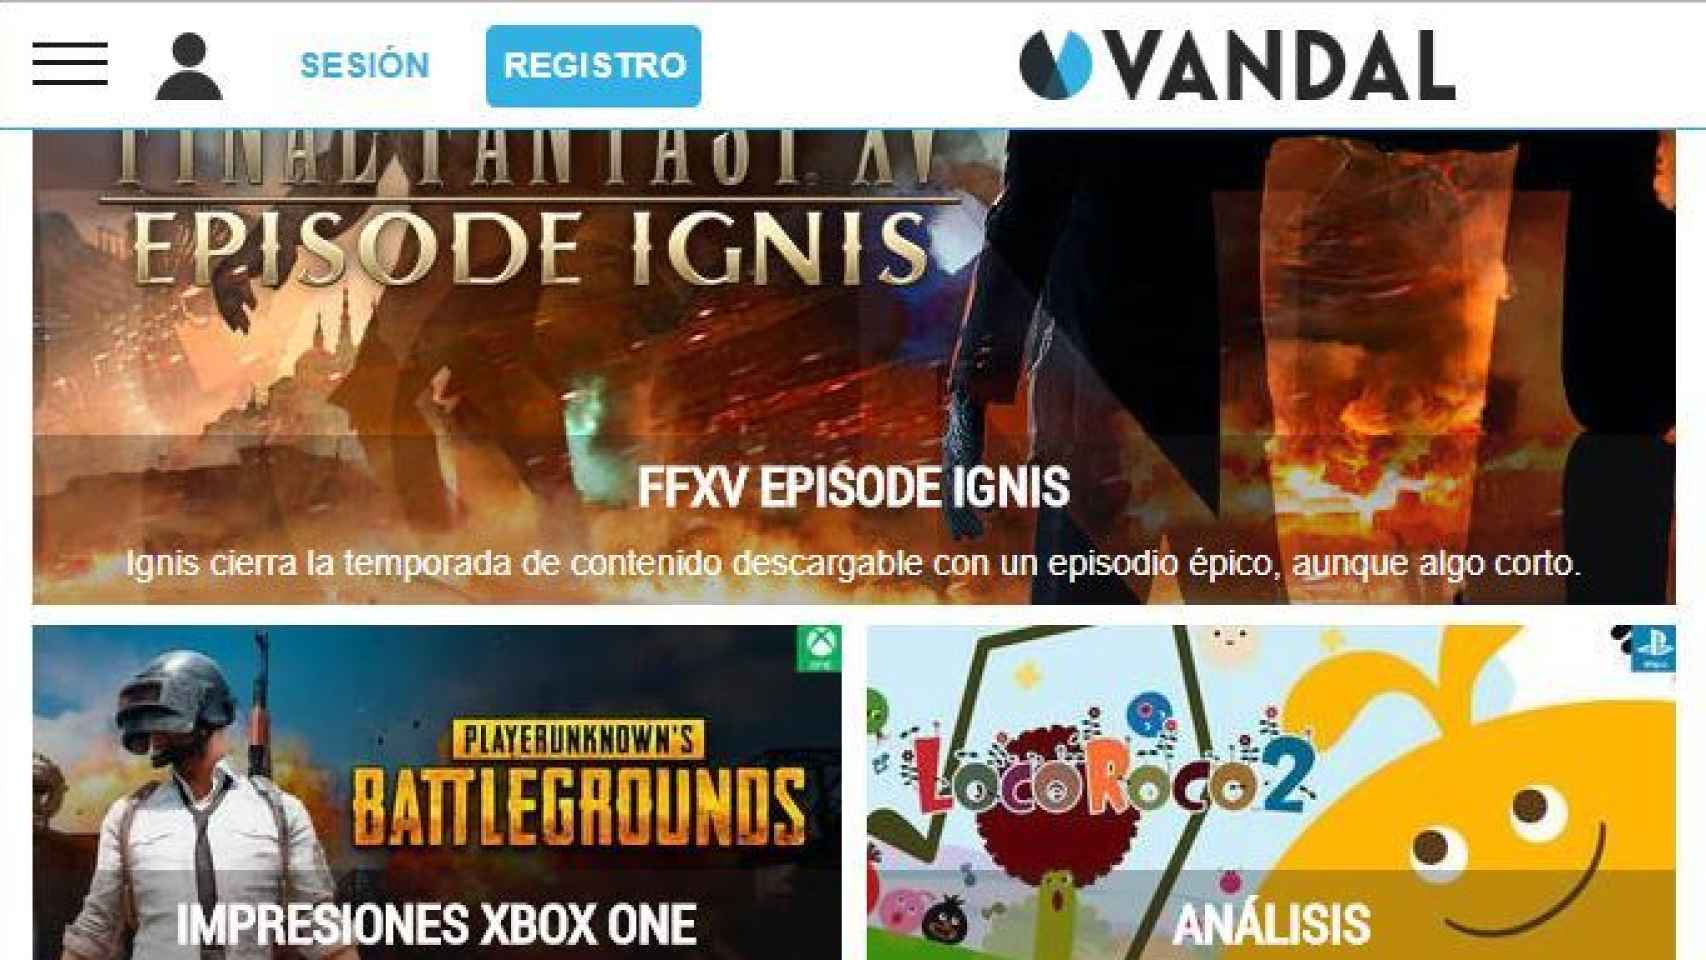 Vandal, el medio de videojuegos en español más completo